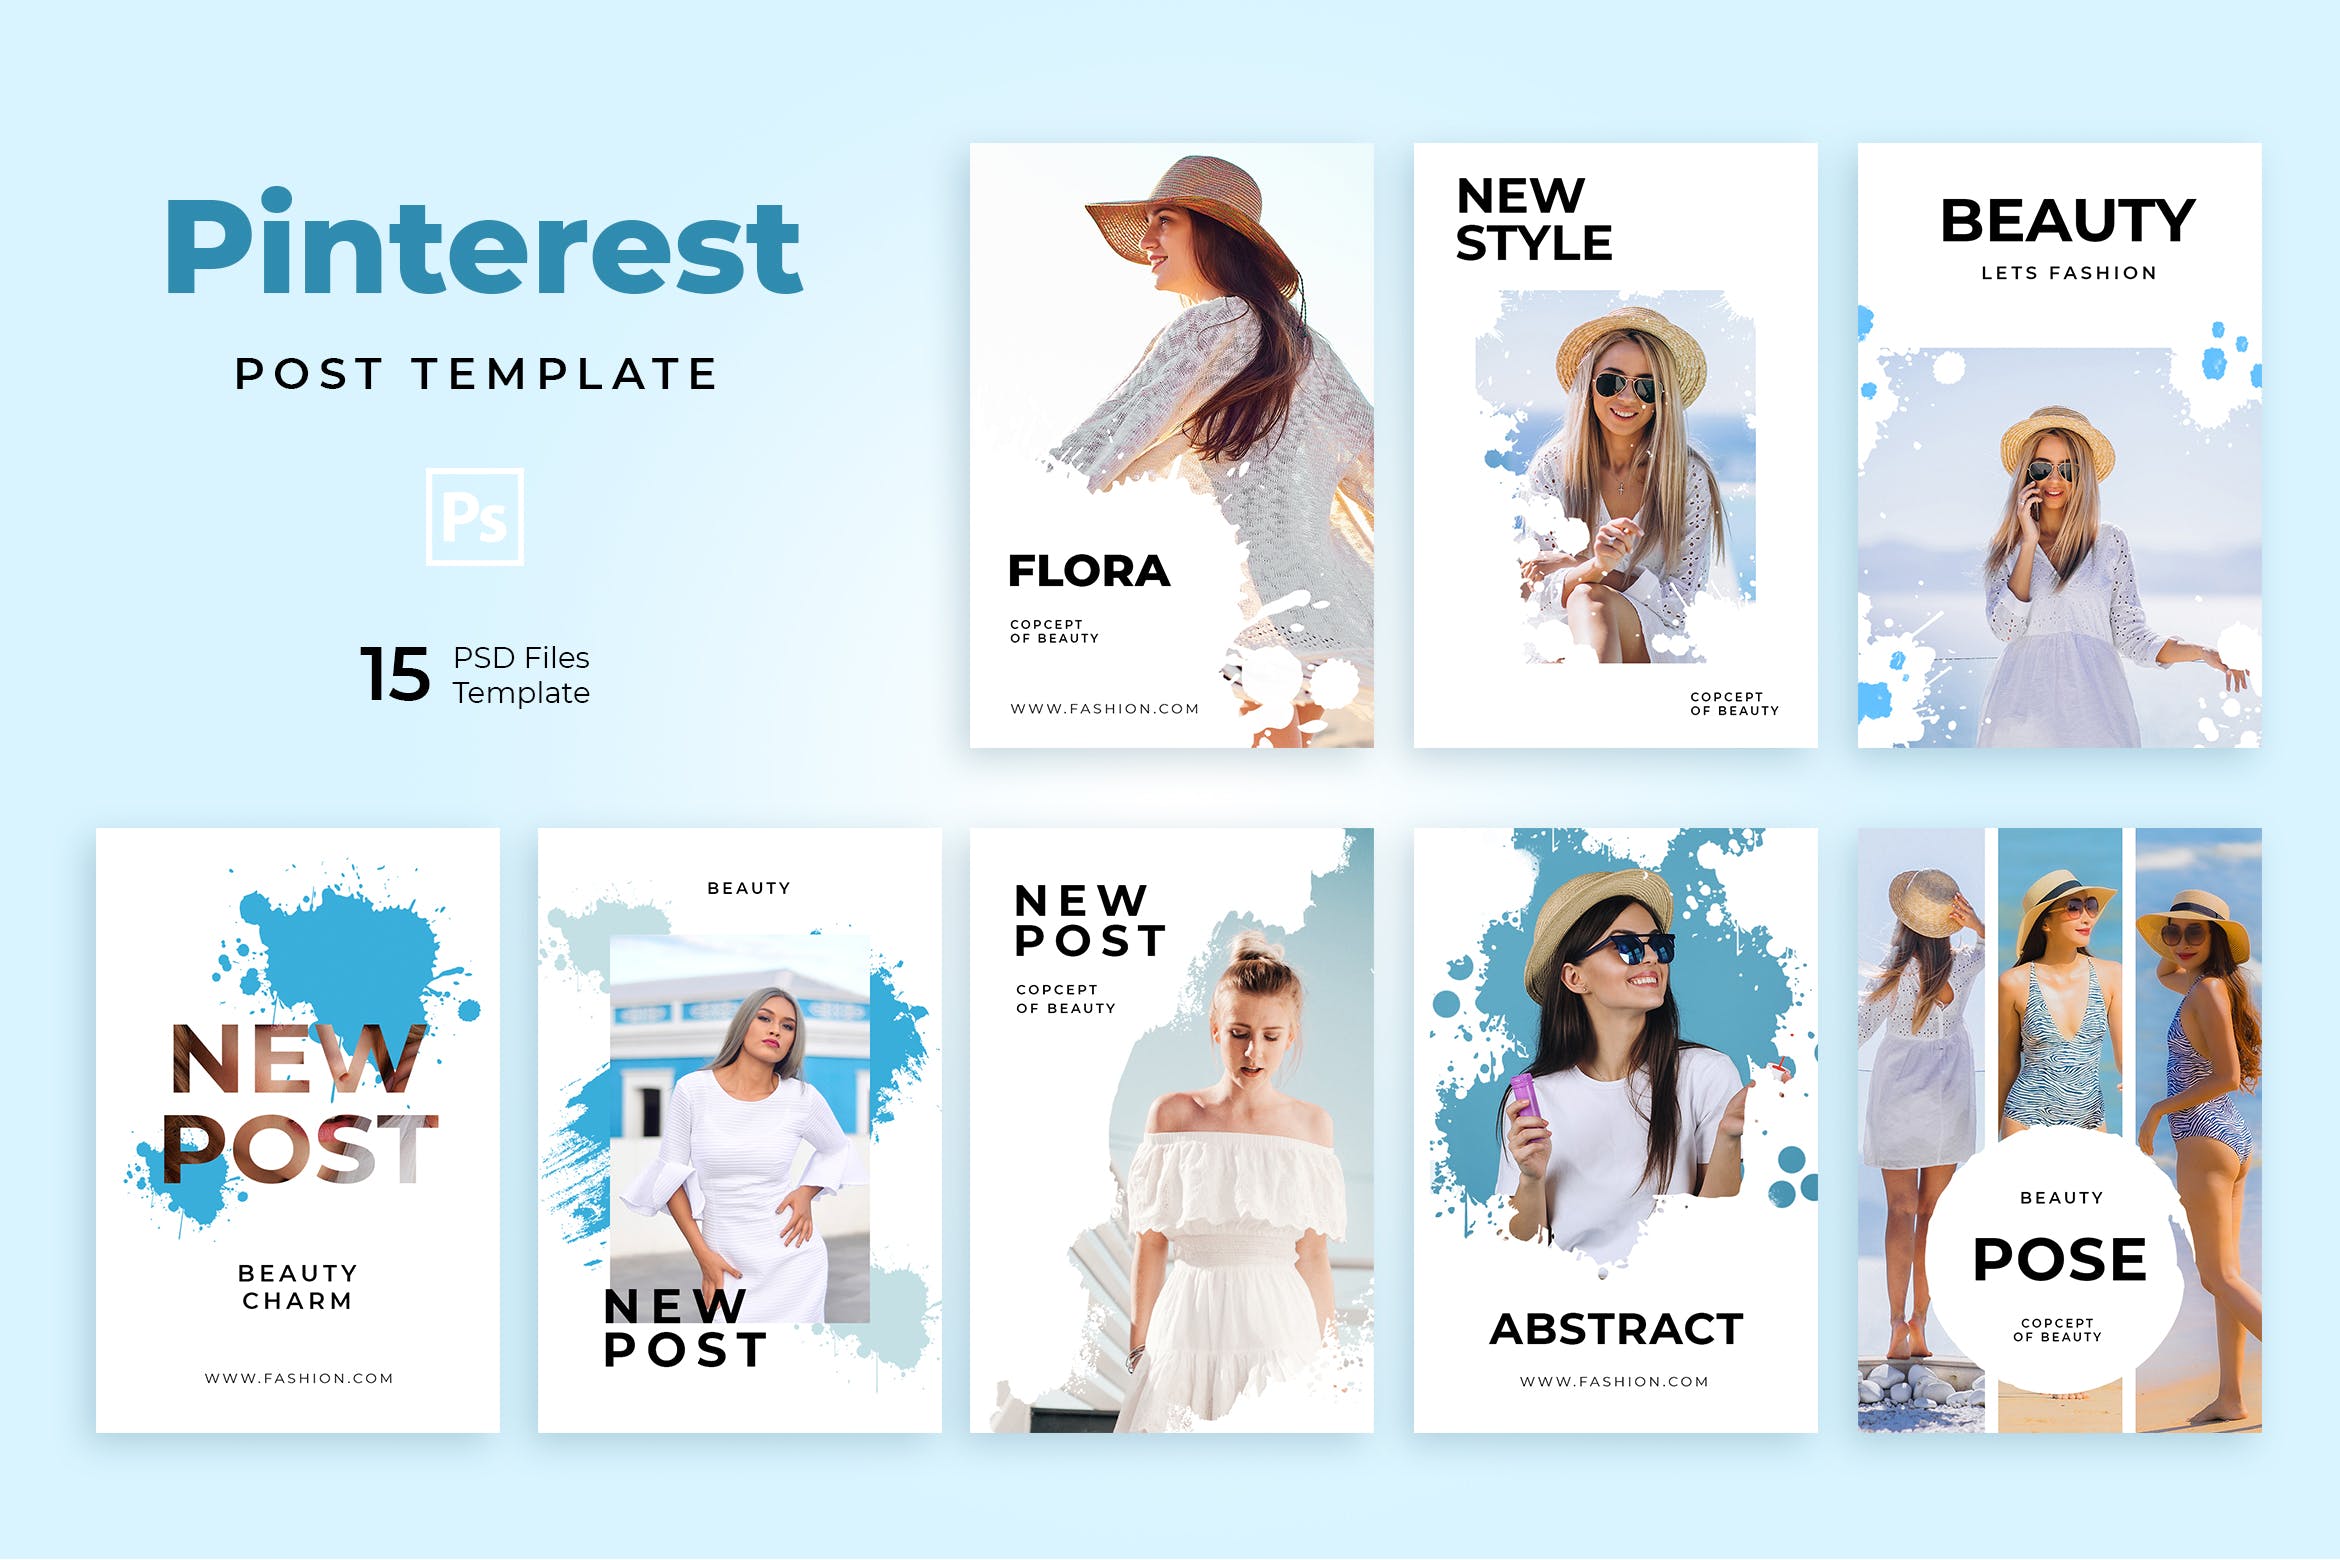 时尚品牌社交营销推广Pinterest模板16设计网精选素材 Beauty Pinterest Templates插图